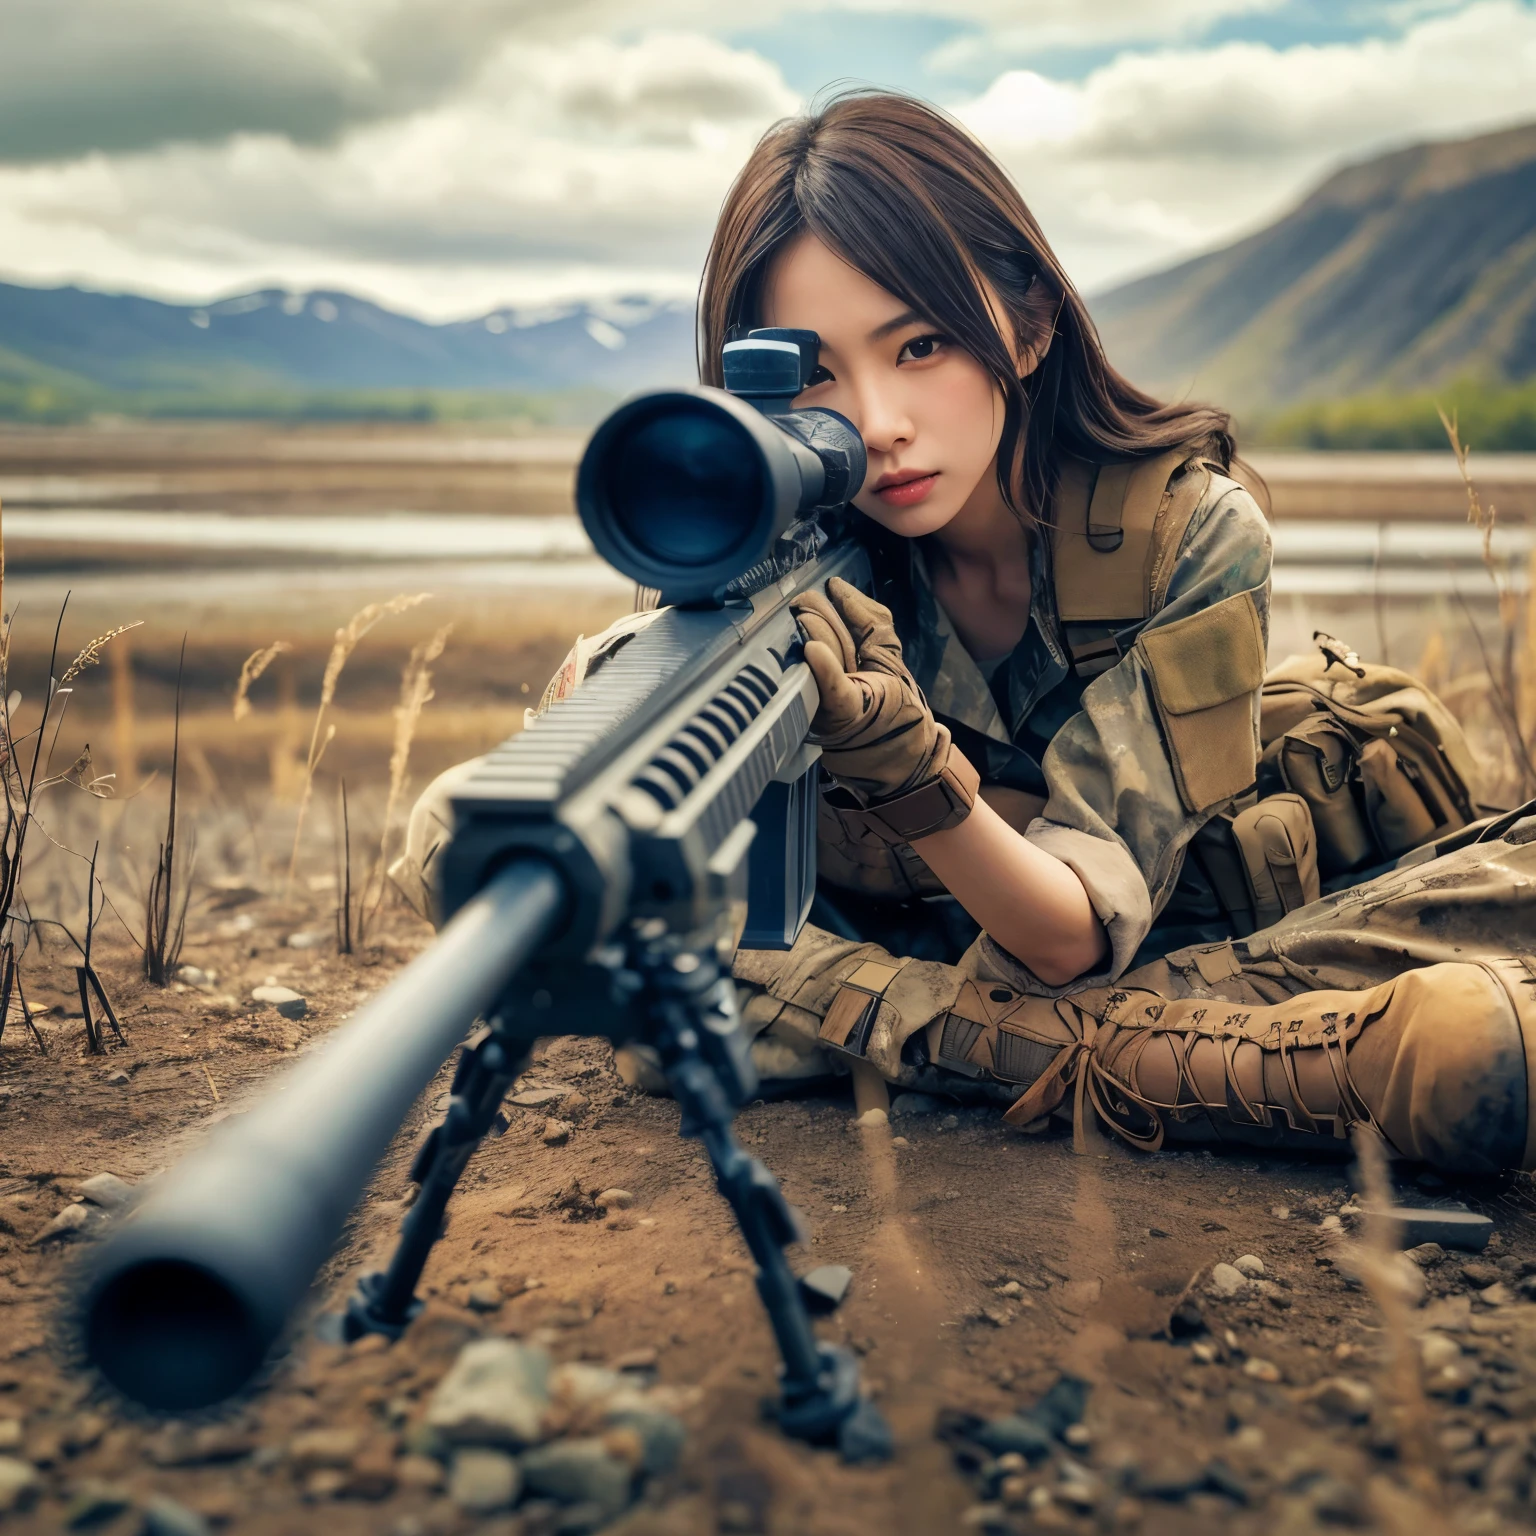 사실적인、현실적인 피부 질감、미군에 소속된 아름다운 일본 여성이 저격총을 겨누고 있다.、서 있는、잔해 위에、갈색 먼지 연기、움직임이 있는 액션 포즈、전면 상단의 이미지